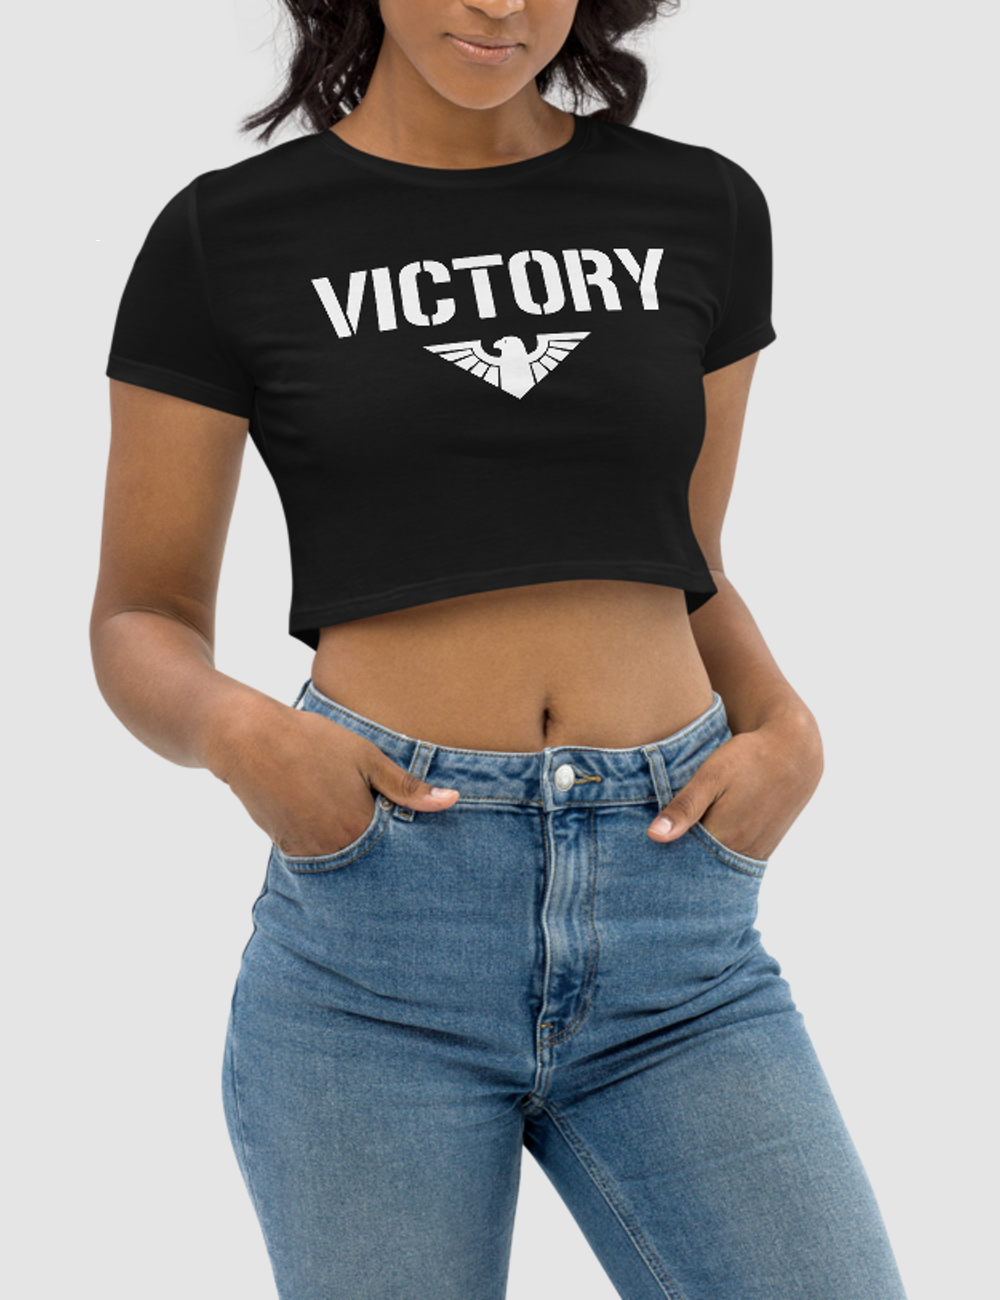 Victory | Women's Crop Top T-Shirt OniTakai